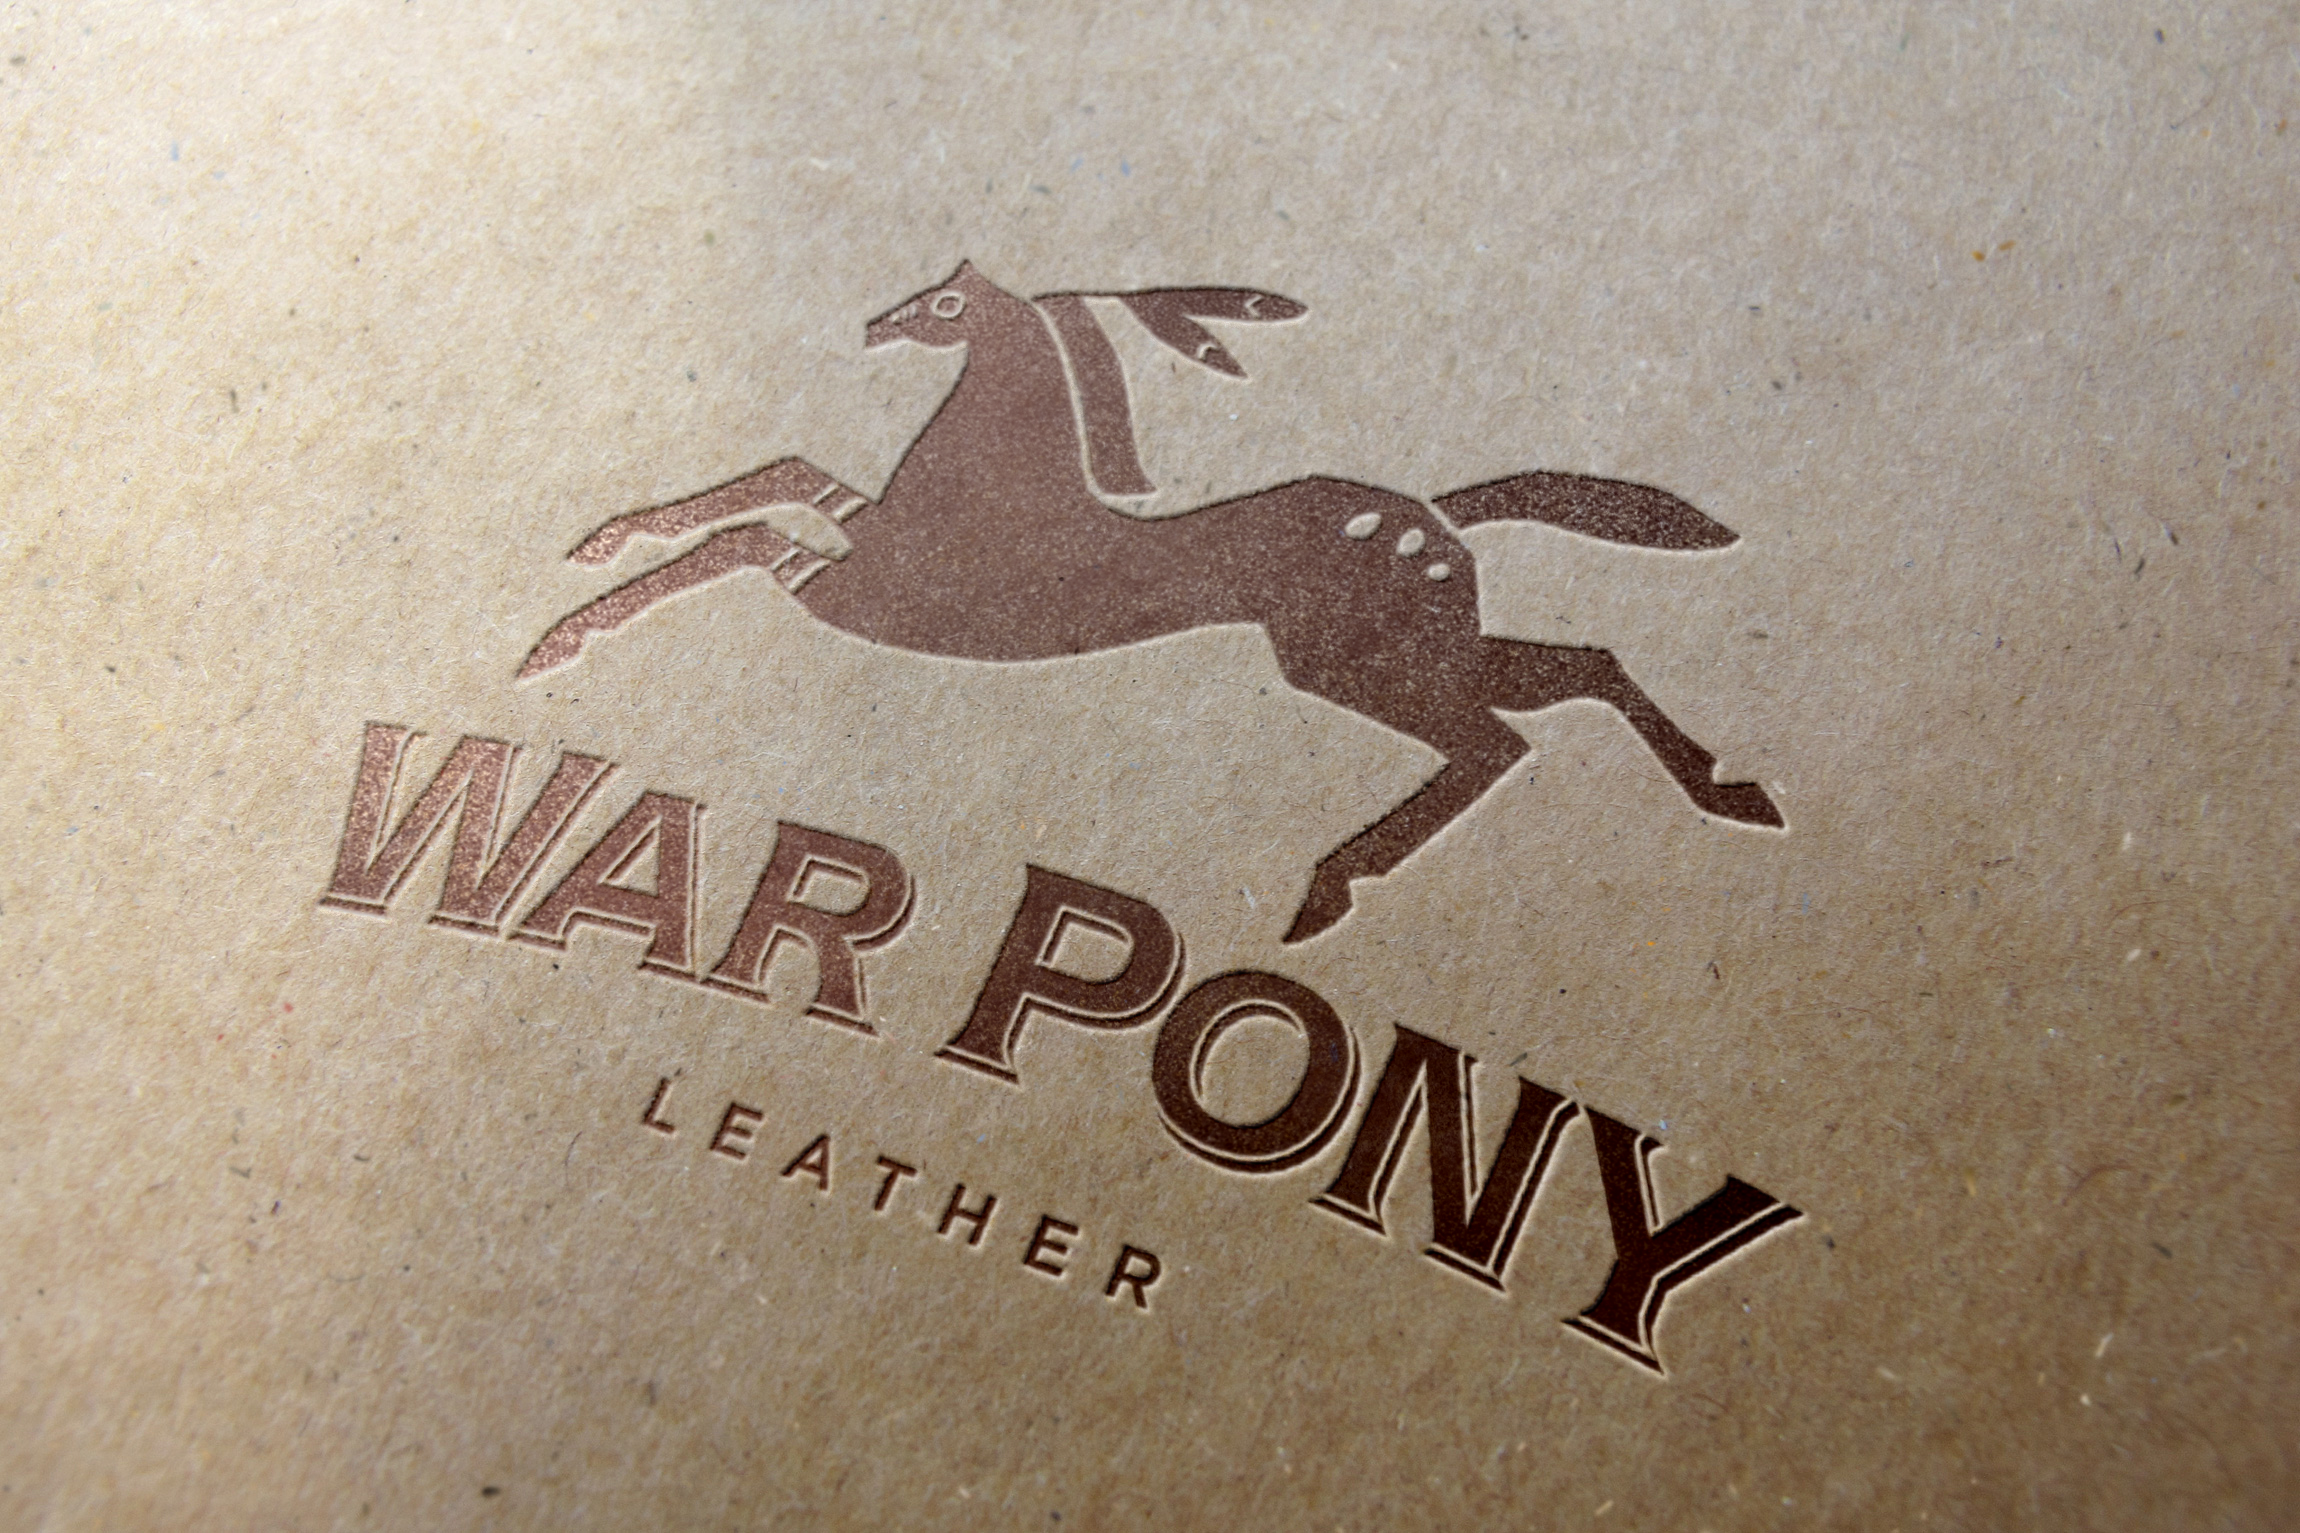 Warpony Leather Logo